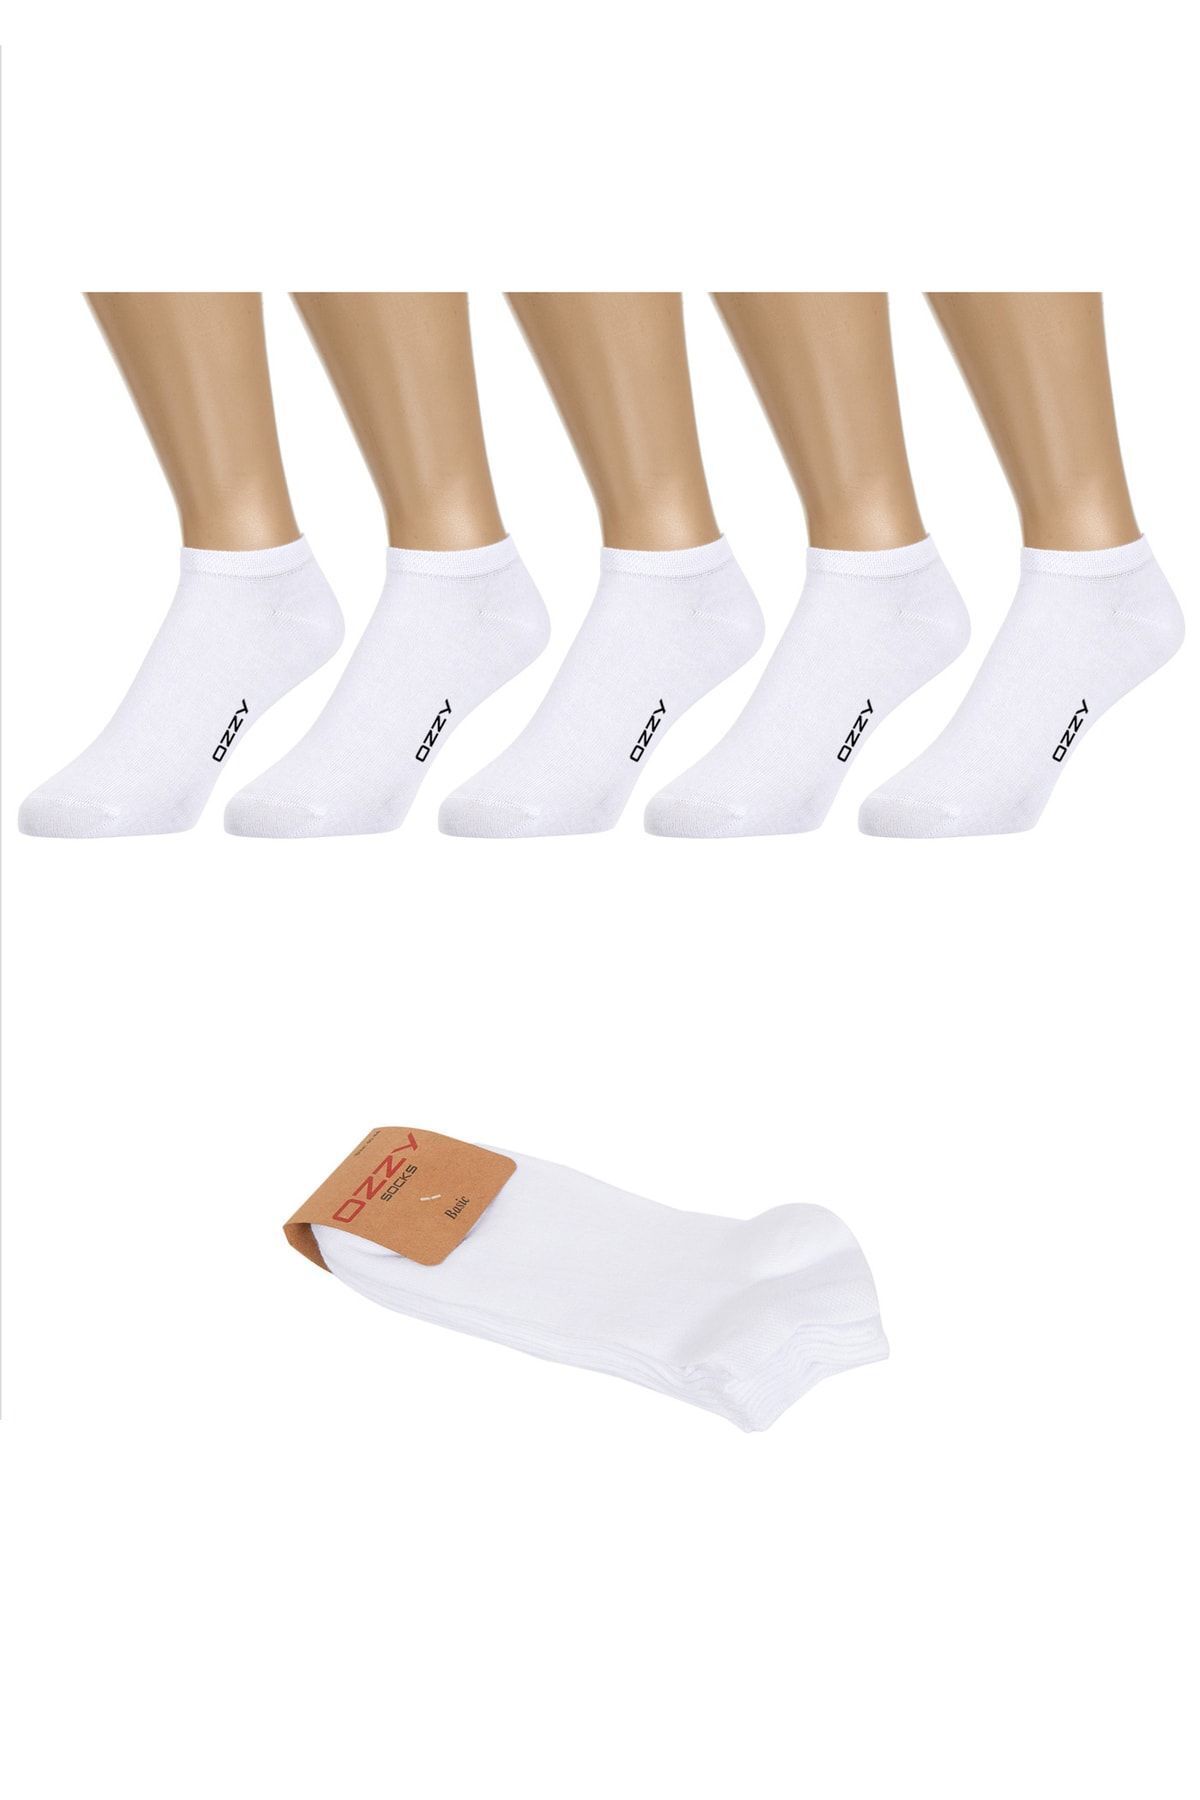 Ozzy Socks 5 Çift Dikişsiz Pamuklu Beyaz Patik Çorap Yazlık Dayanıklı Topuk Ve Burun